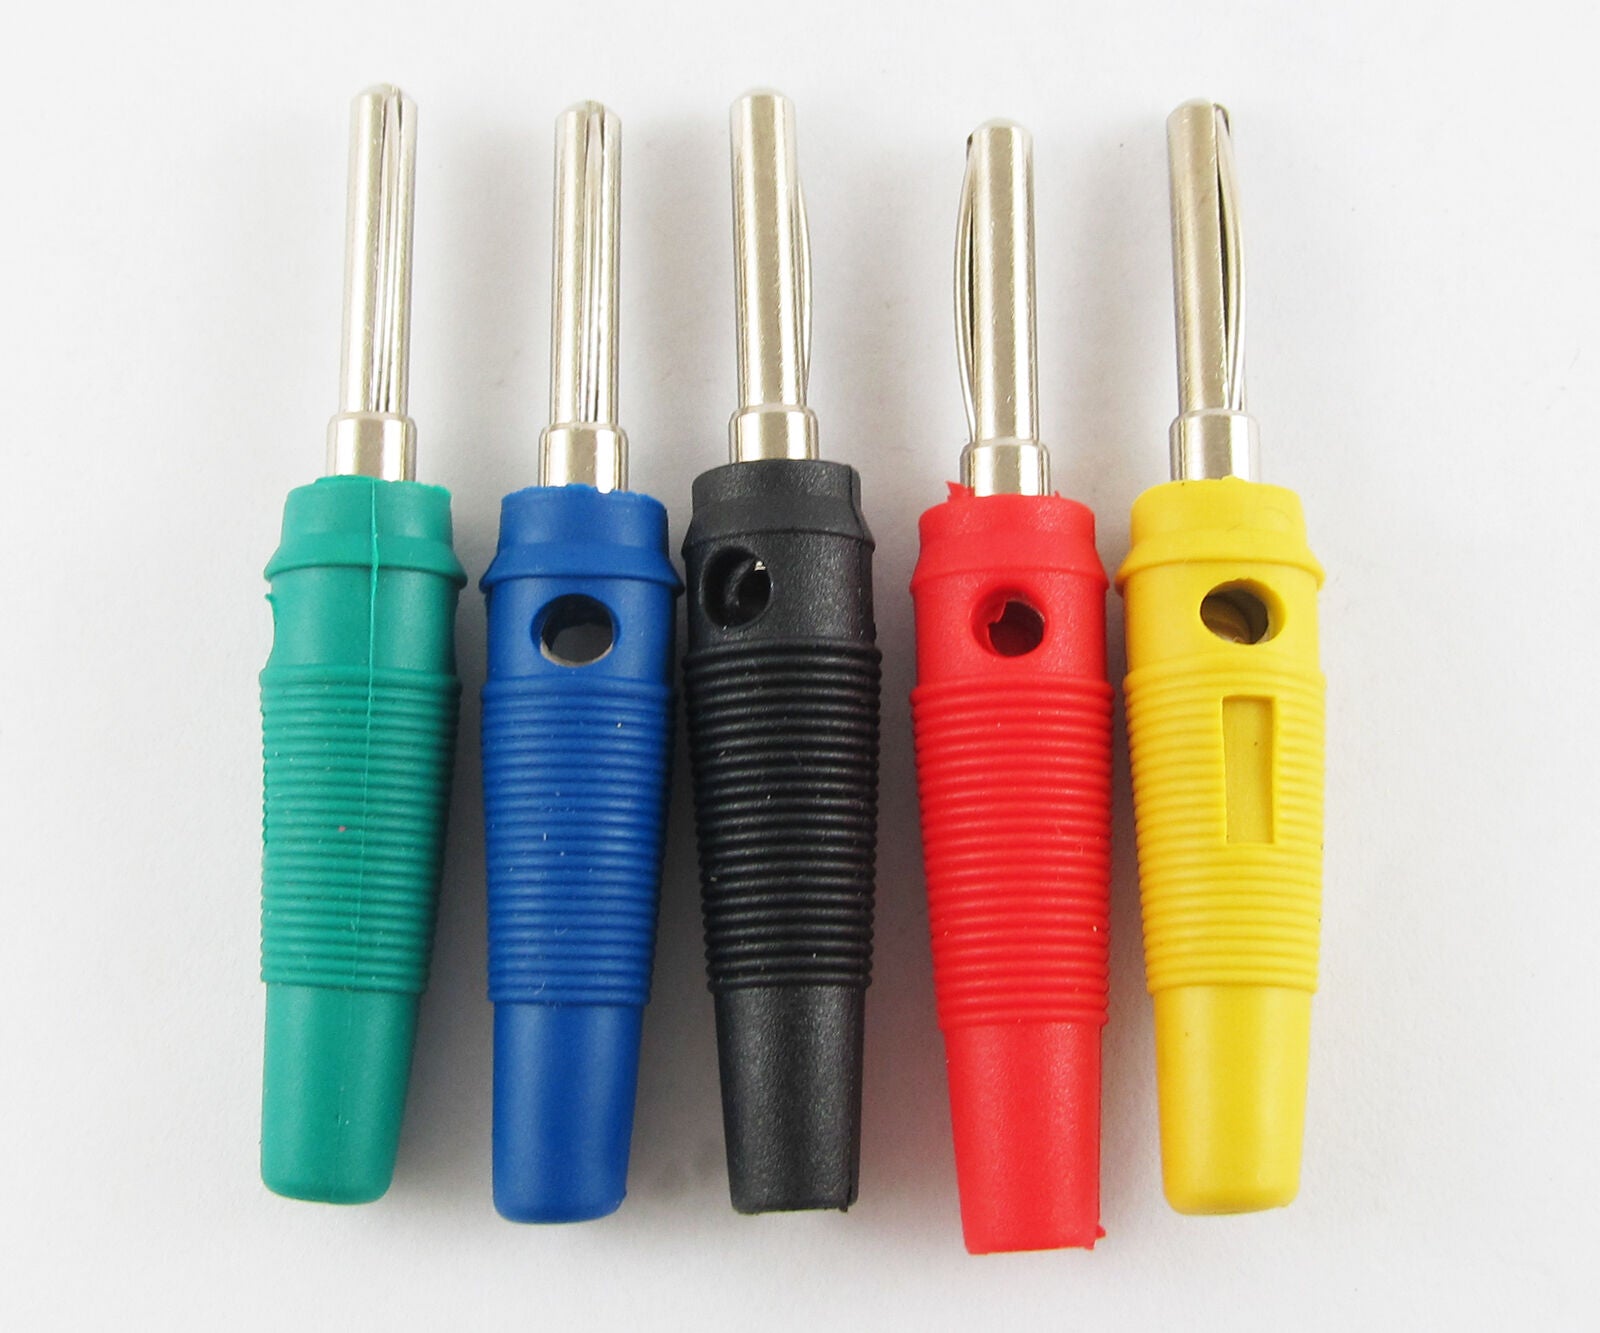 10sets 5 colors 4mm  High quality Free Solder BrassBanana Plug Test Adapter